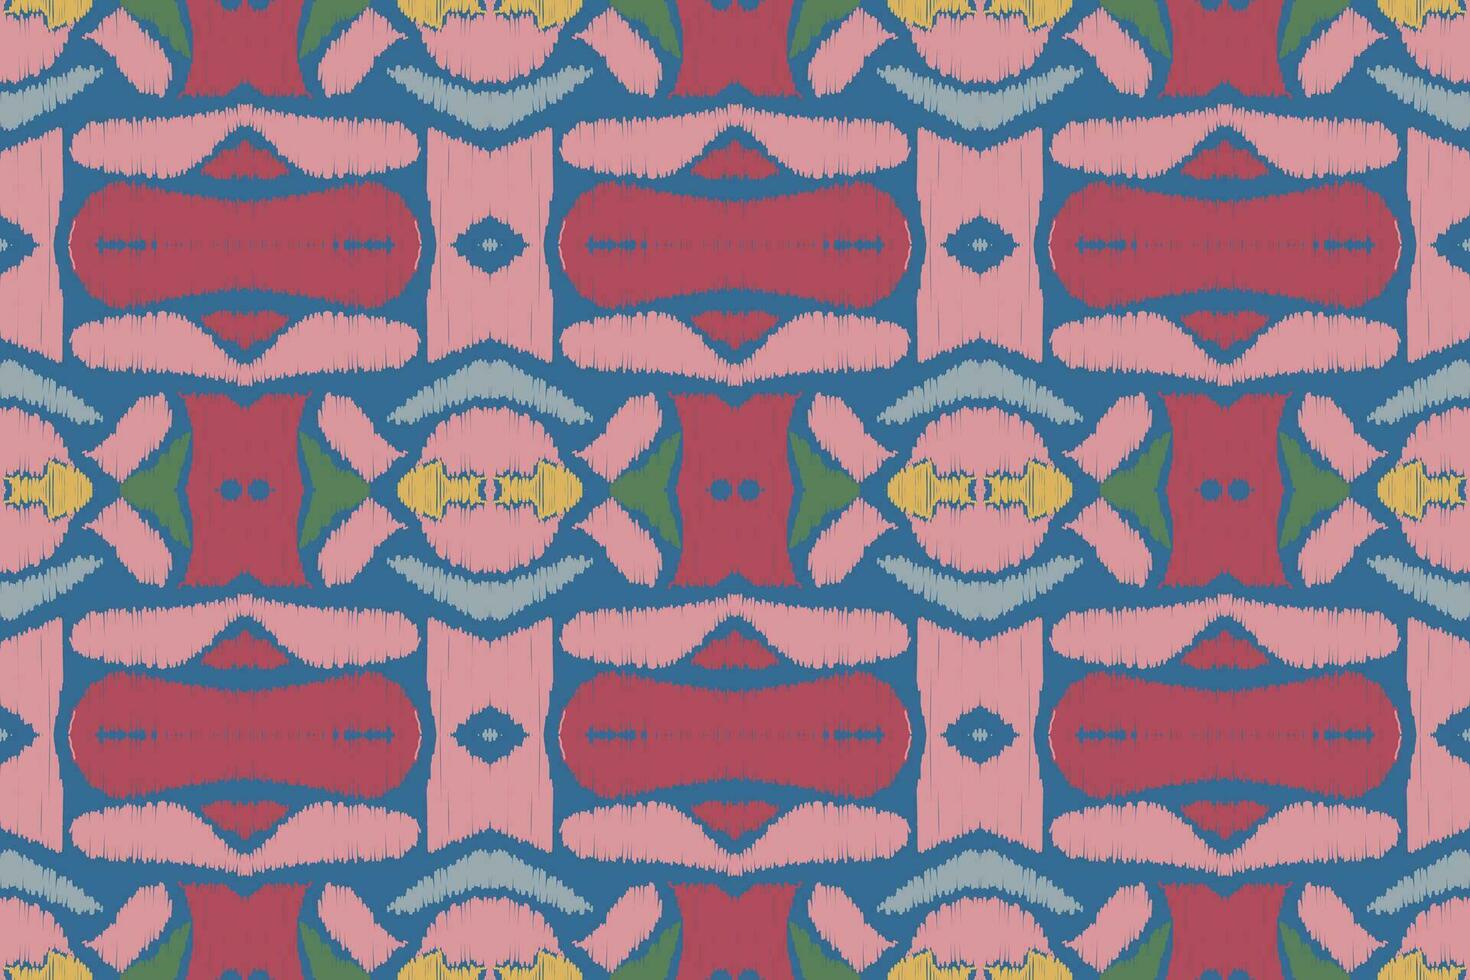 Ikat Damast Paisley Stickerei Hintergrund. Ikat Blume geometrisch ethnisch orientalisch Muster traditionell. Ikat aztekisch Stil abstrakt Design zum drucken Textur, Stoff, Saree, Sari, Teppich. vektor